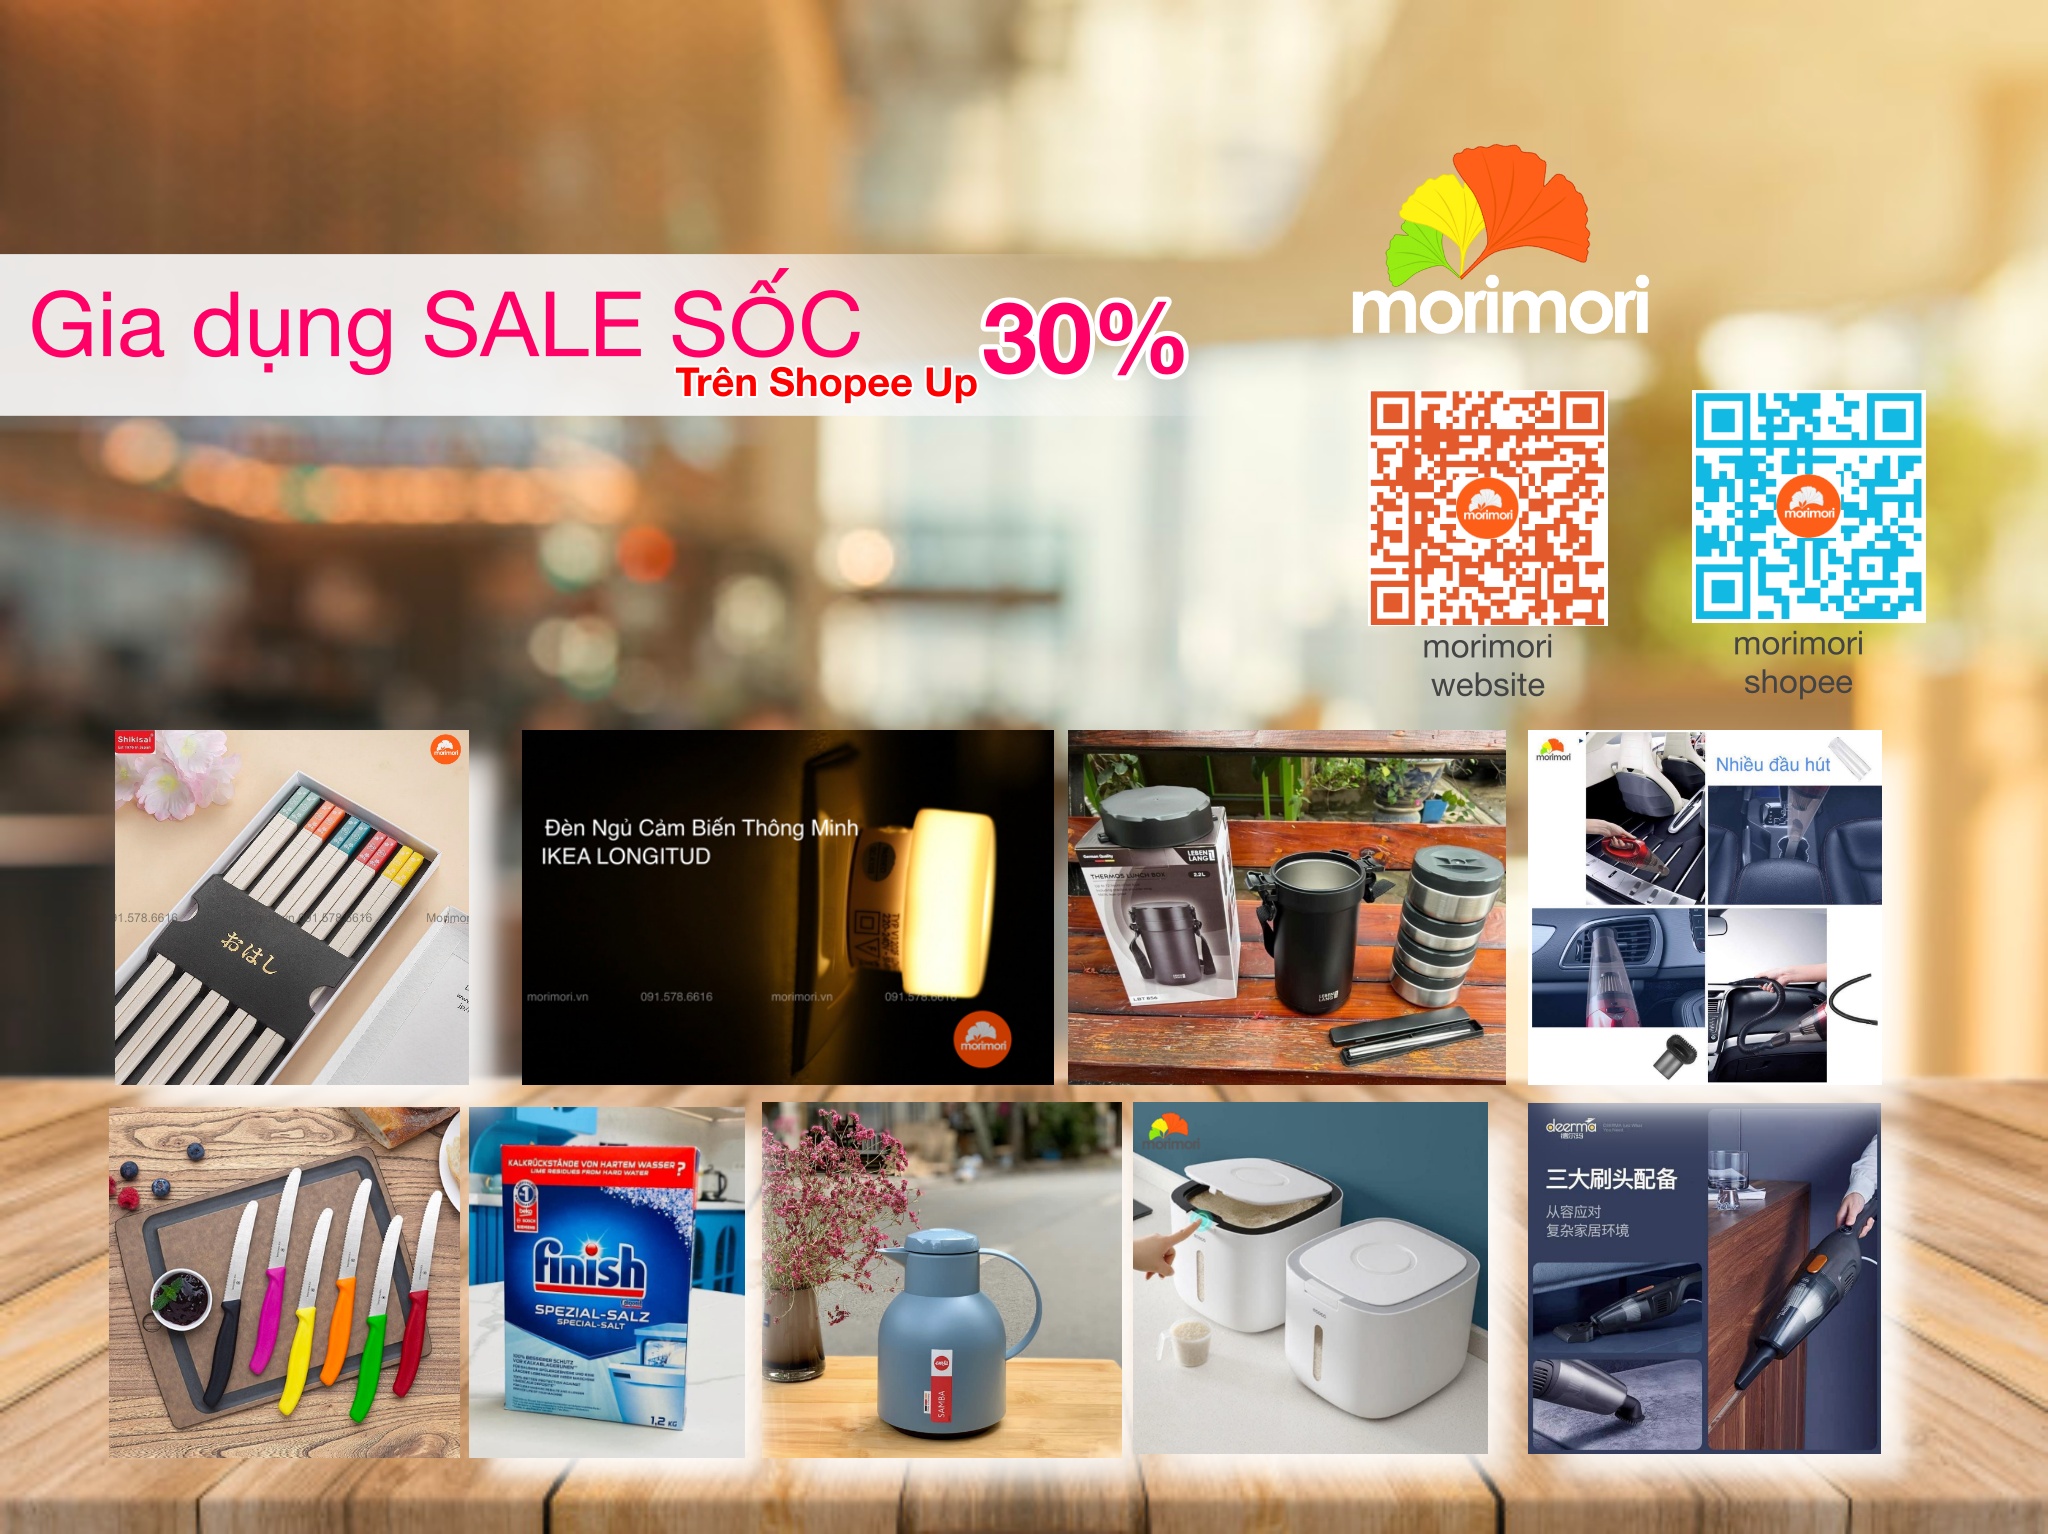 Chào Mừng Quốc Khánh 2/9 Morimori Tung Chương trình Đồ Bếp, Đồ Gia Dụng Sale #Trên Shopee Giảm UP 30%